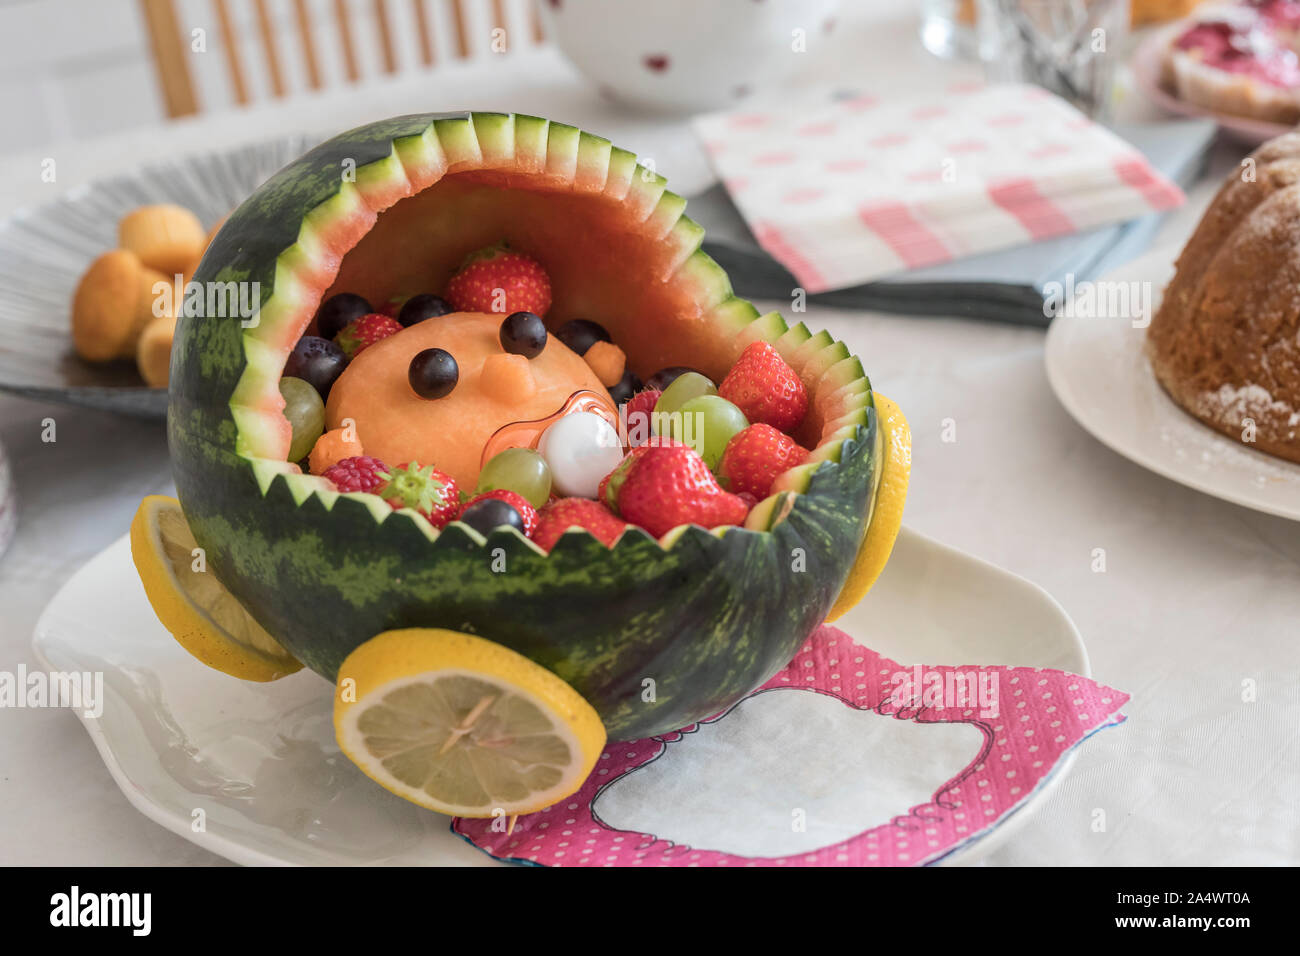 Un bébé dans une poussette faites de fruits frais. Le chariot est constitué  d'une pastèque. Servi à douche de bébé, célébration du nouveau bébé et mo  Photo Stock - Alamy